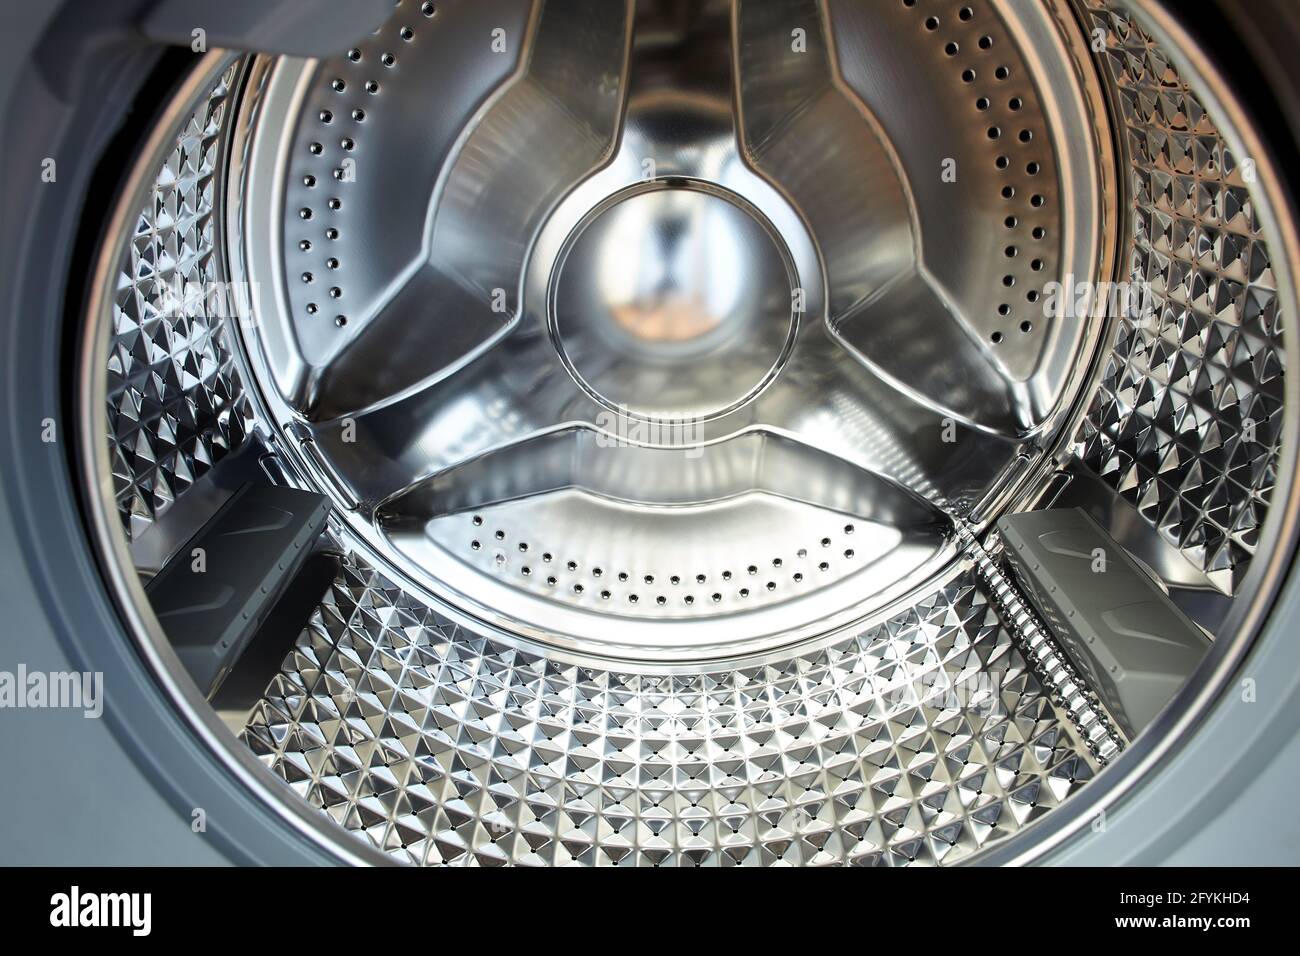 El tambor vacío de la lavadora moderna está hecho de acero inoxidable  Fotografía de stock - Alamy